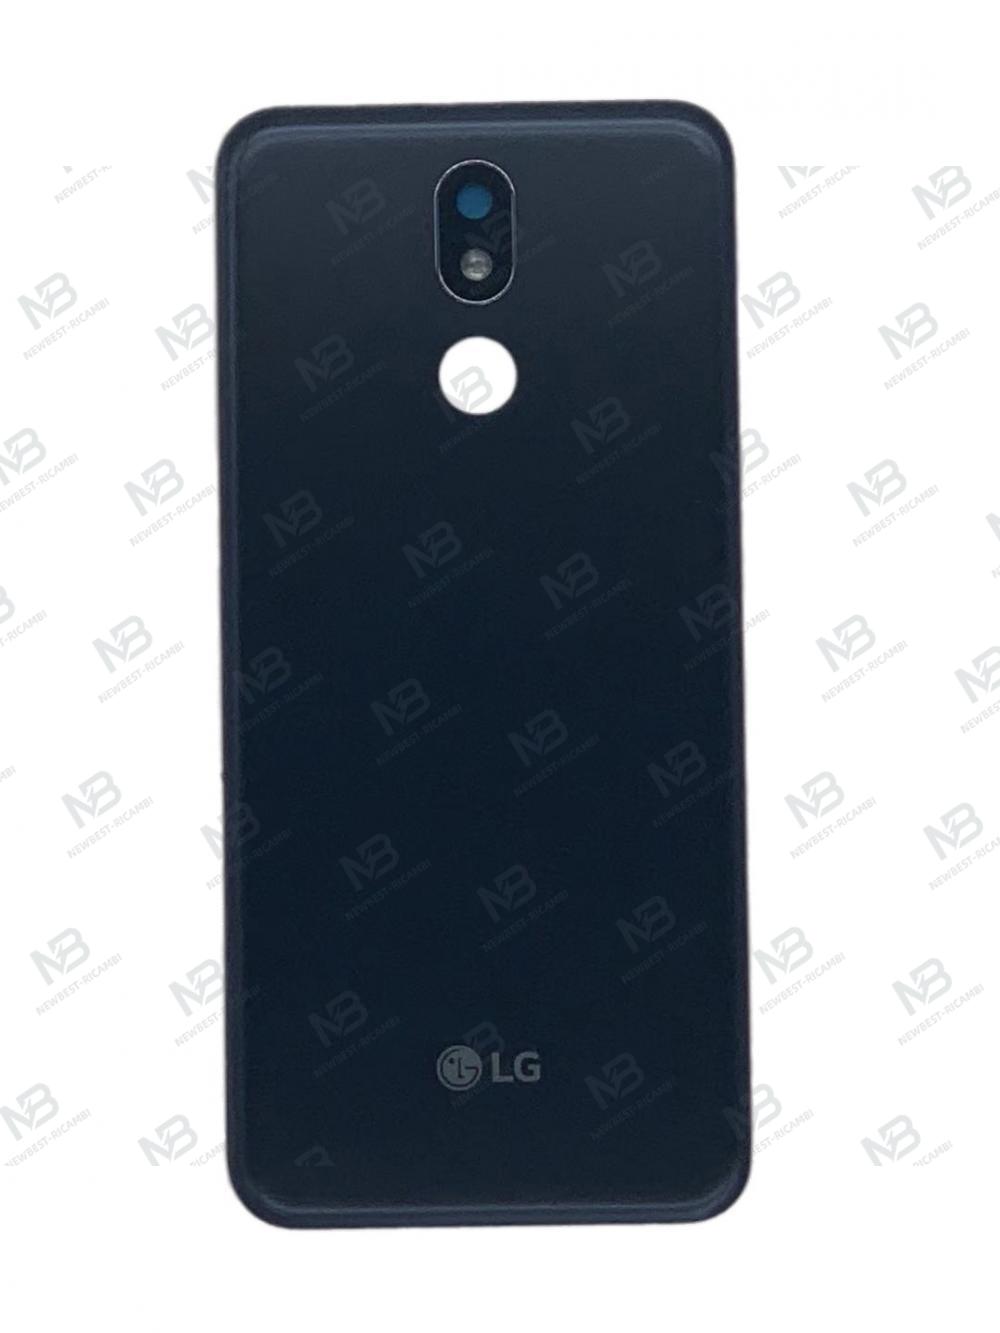 LG K40 back cover black